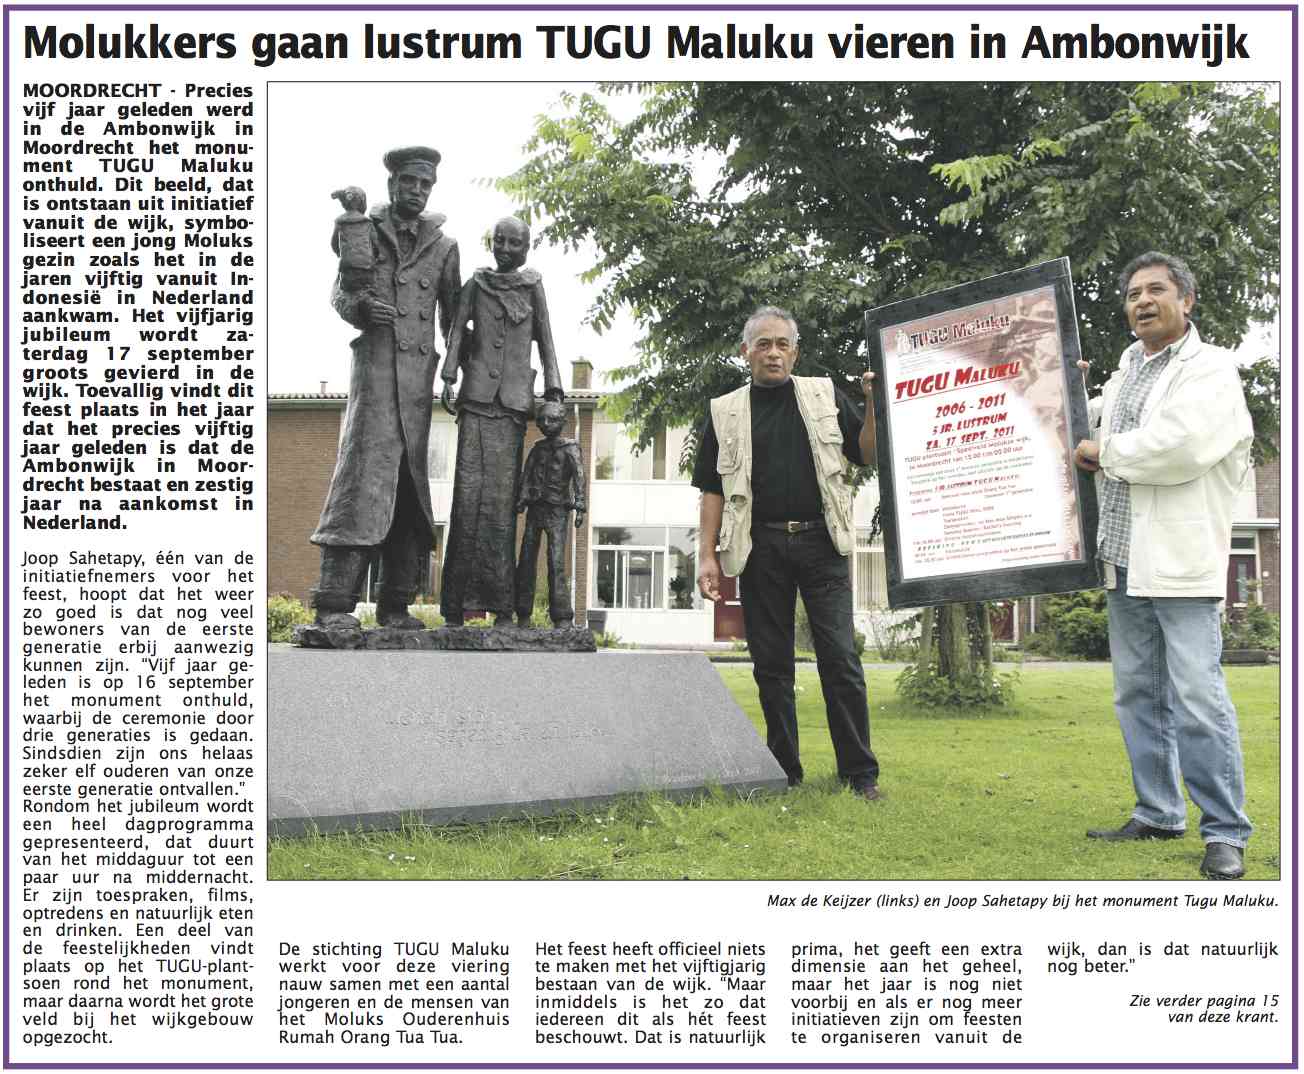 Je bekijkt nu Molukkers gaan lustrum Tugu Maluku vieren in Ambonwijk